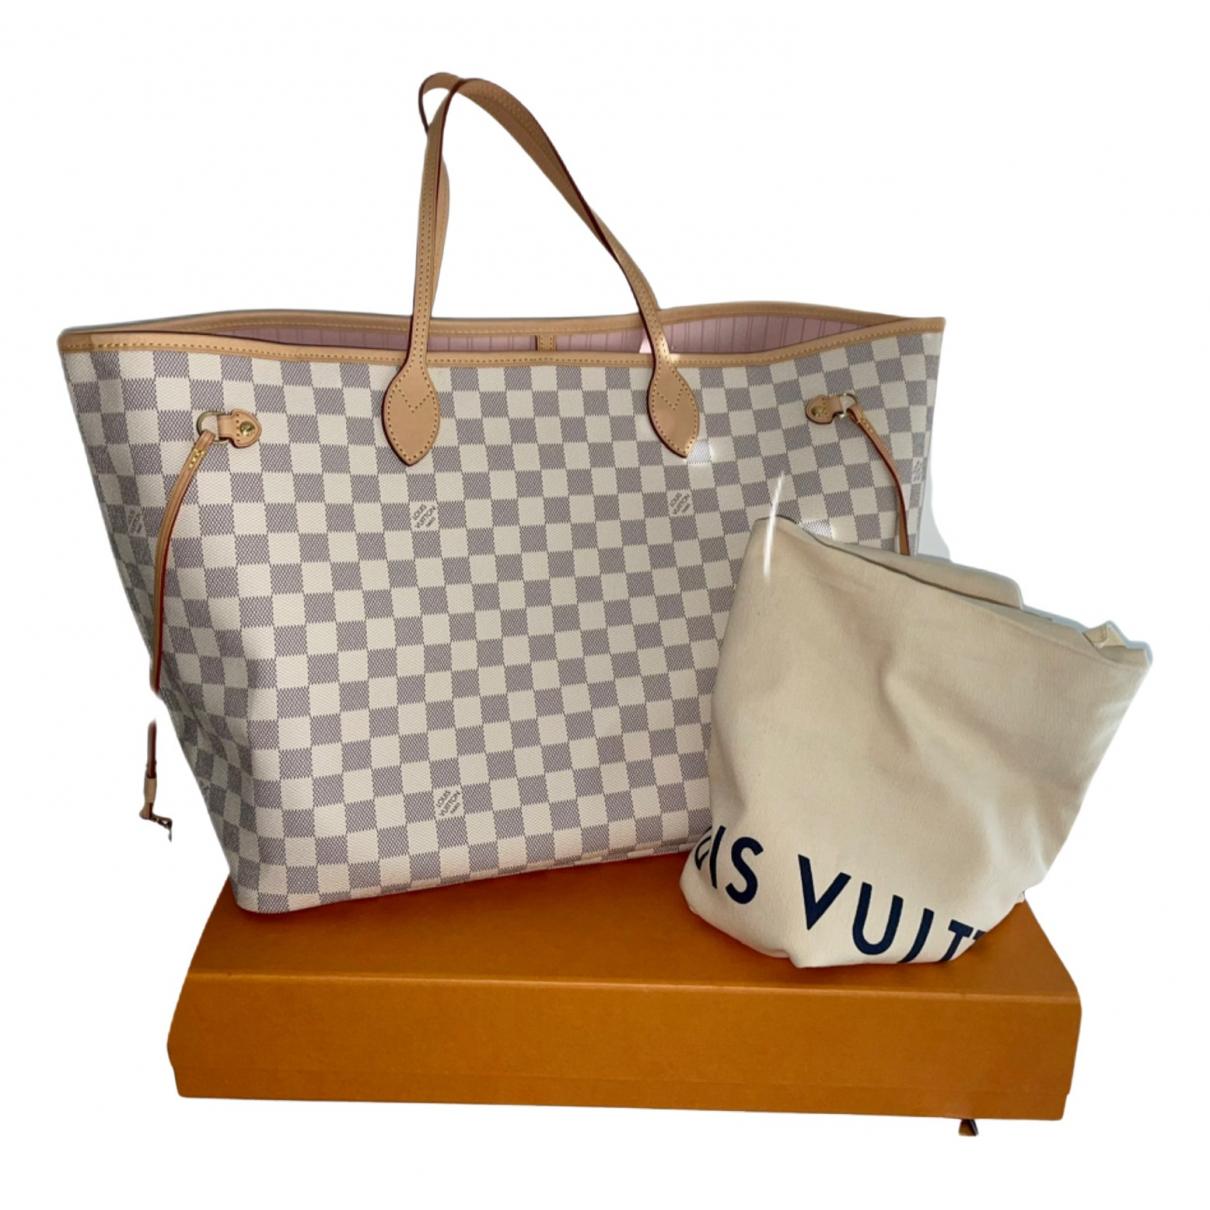 Louis Vuitton Neverfull MM Damier Azur Bags Handbags Purse (Beige